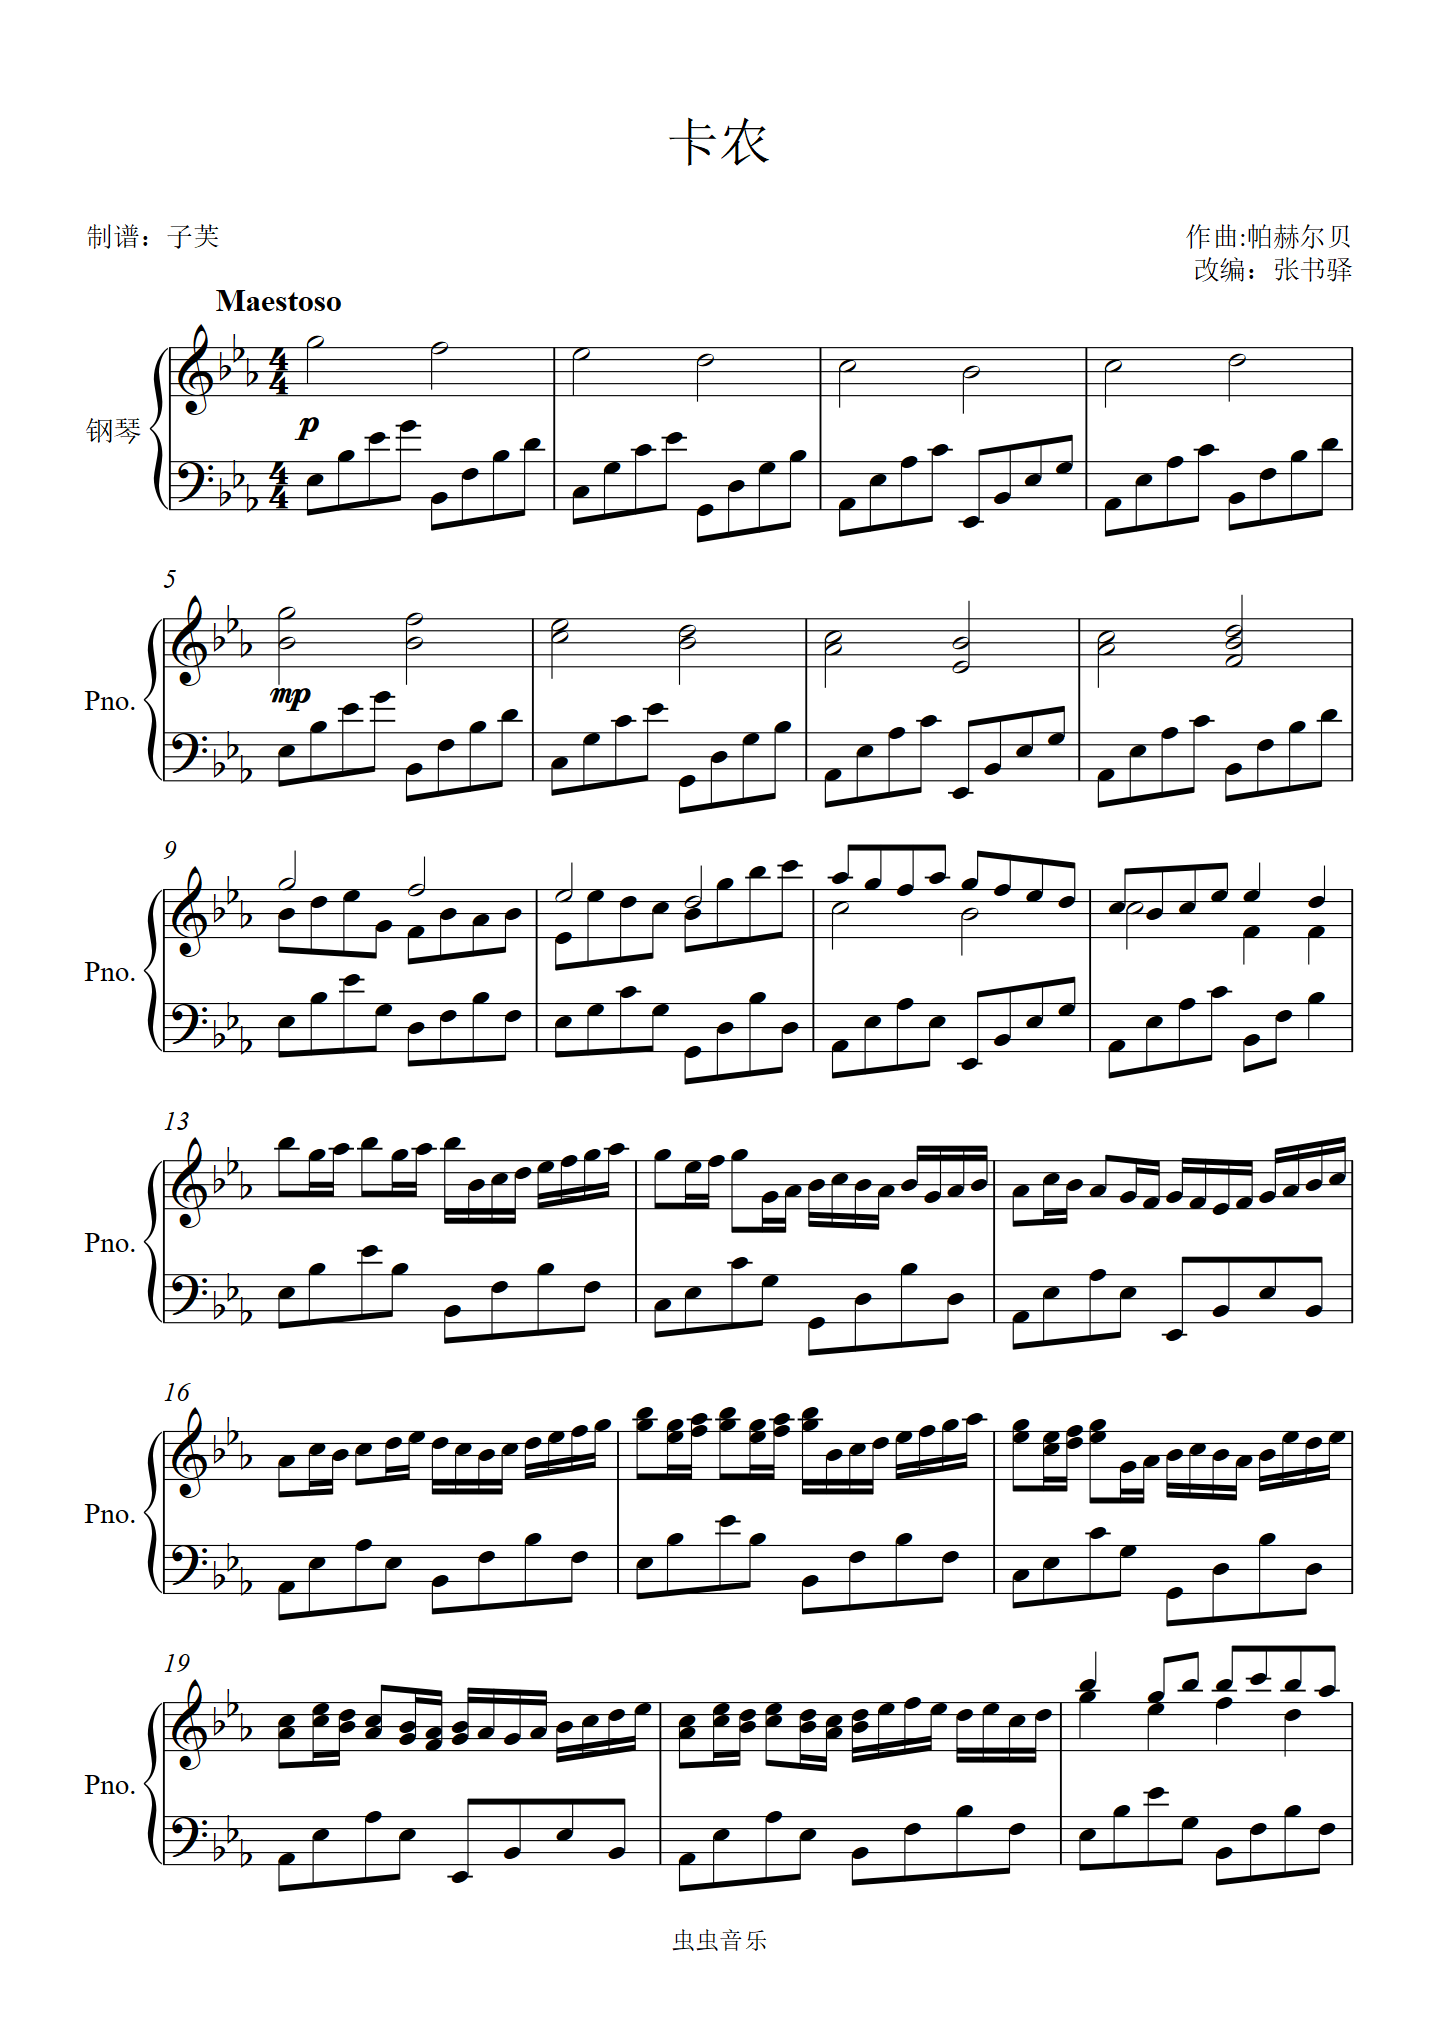 卡农钢琴曲原版钢琴谱(卡农钢琴曲原版钢琴谱c大调)